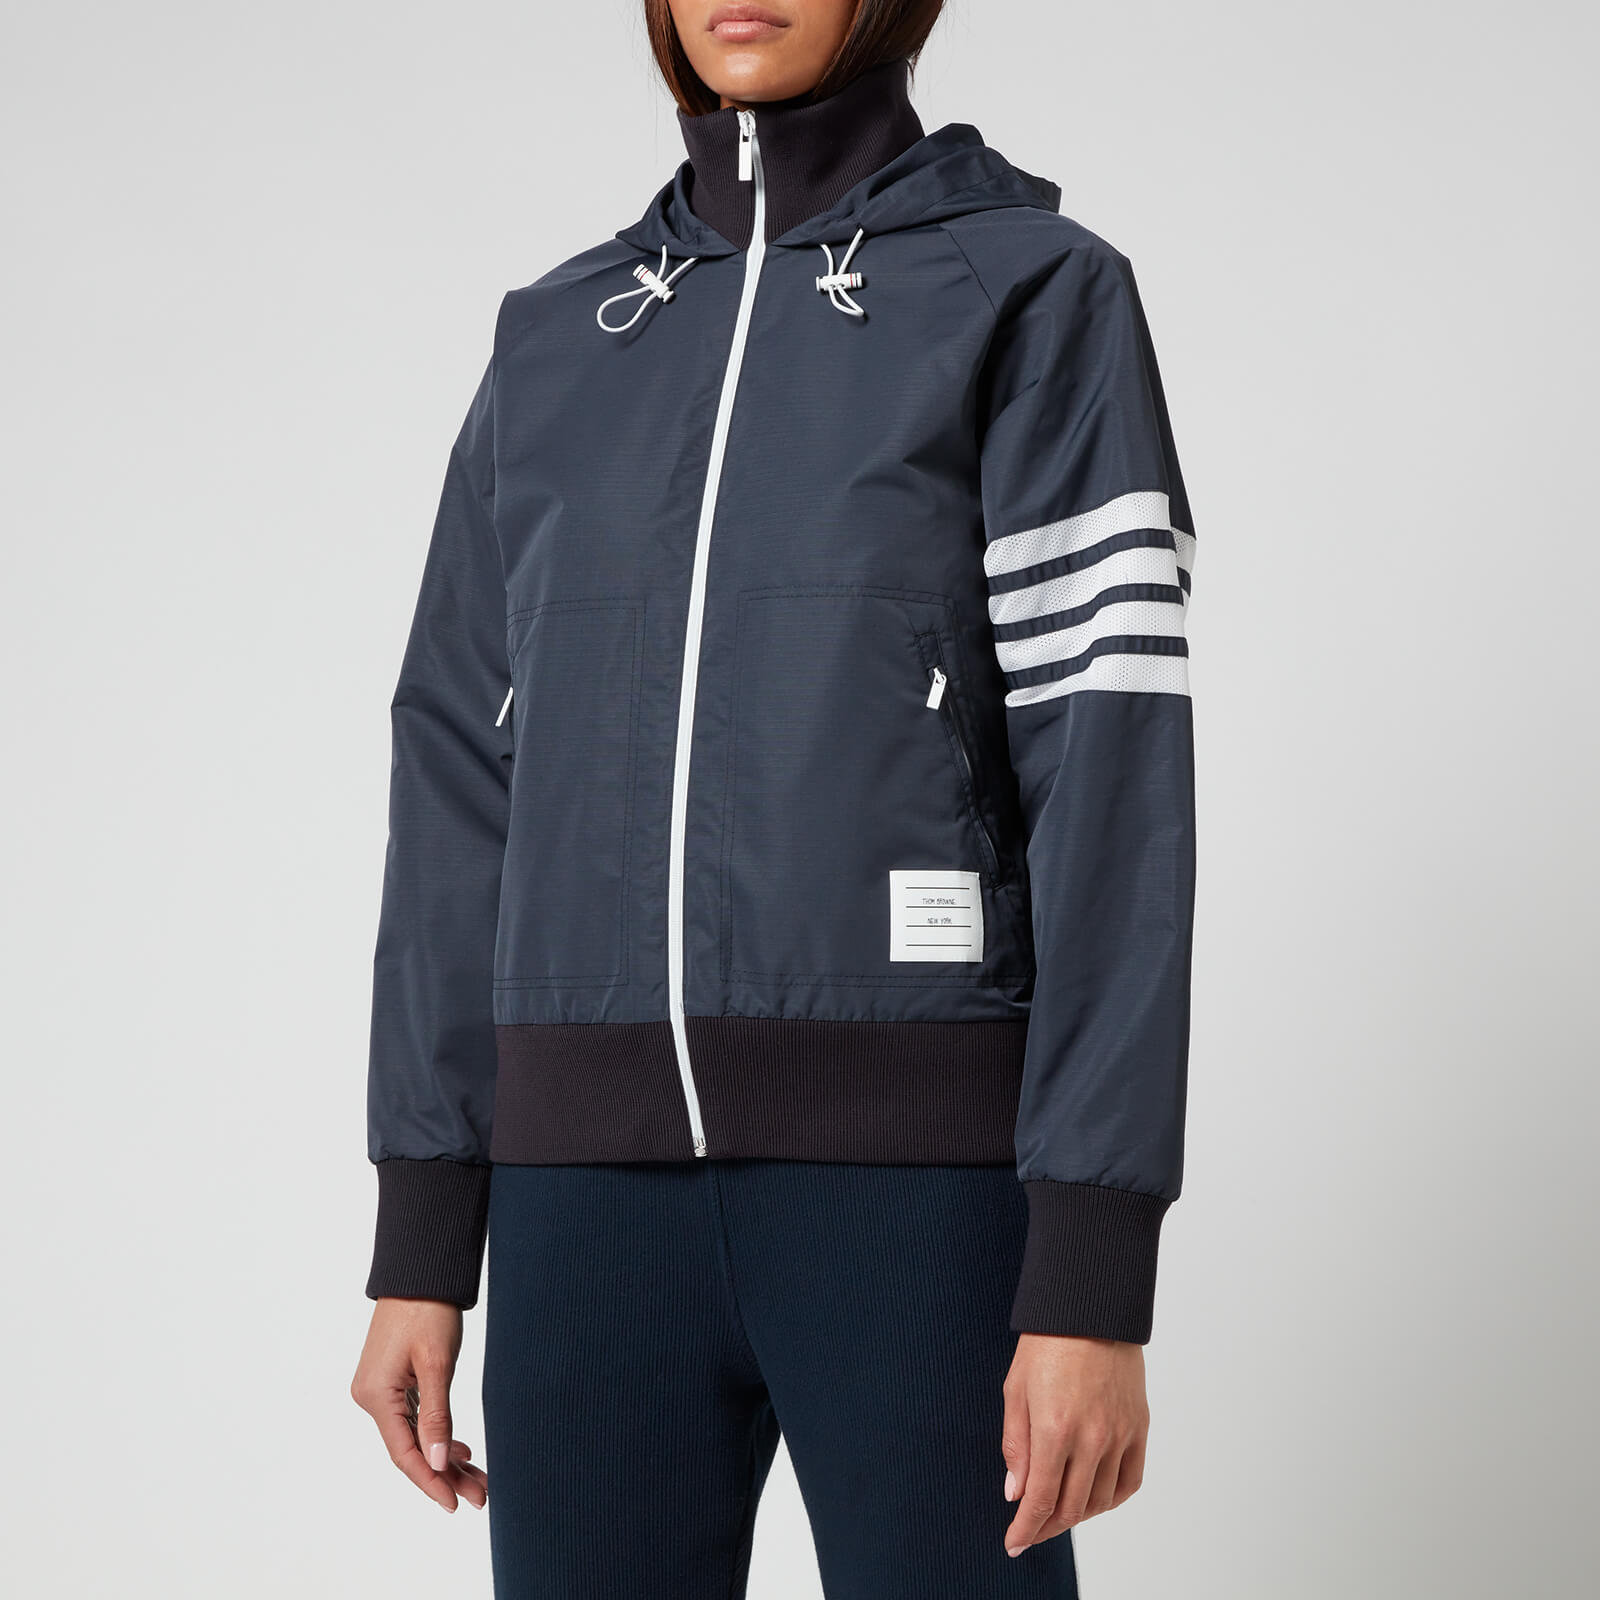 Thom Browne Women's Full Zip Hooded Varsity Jacket - Navy - IT 42/UK 10